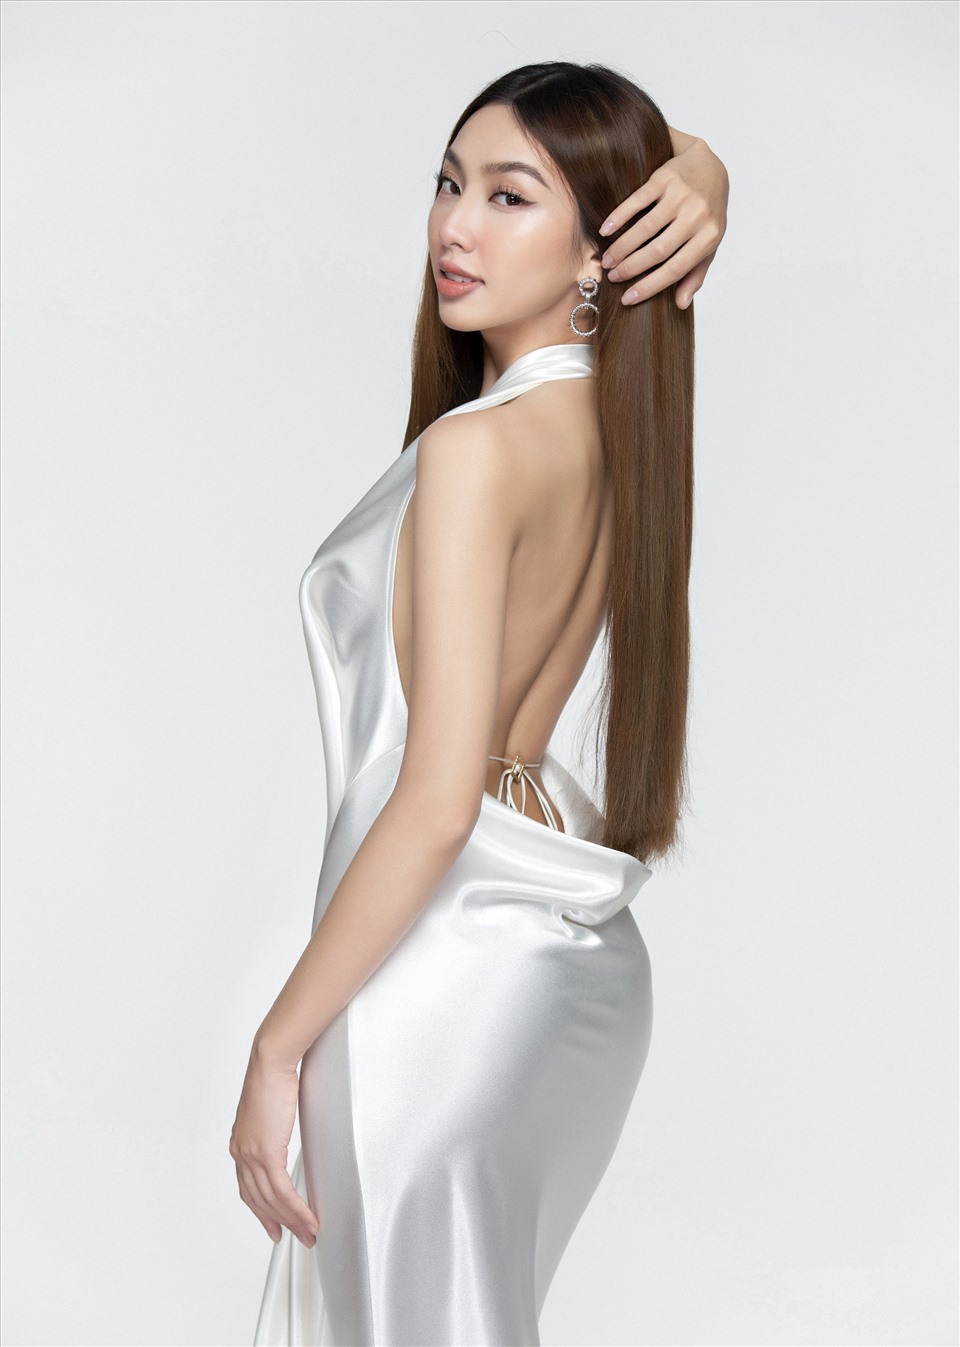 Từ sau đăng quang đến nay, Hoa hậu Thùy Tiên đã liên tục “chiêu đãi” người hâm mộ bằng những tạo hình mới, từ dịu dàng đến cá tính, đậm chất riêng của mình.